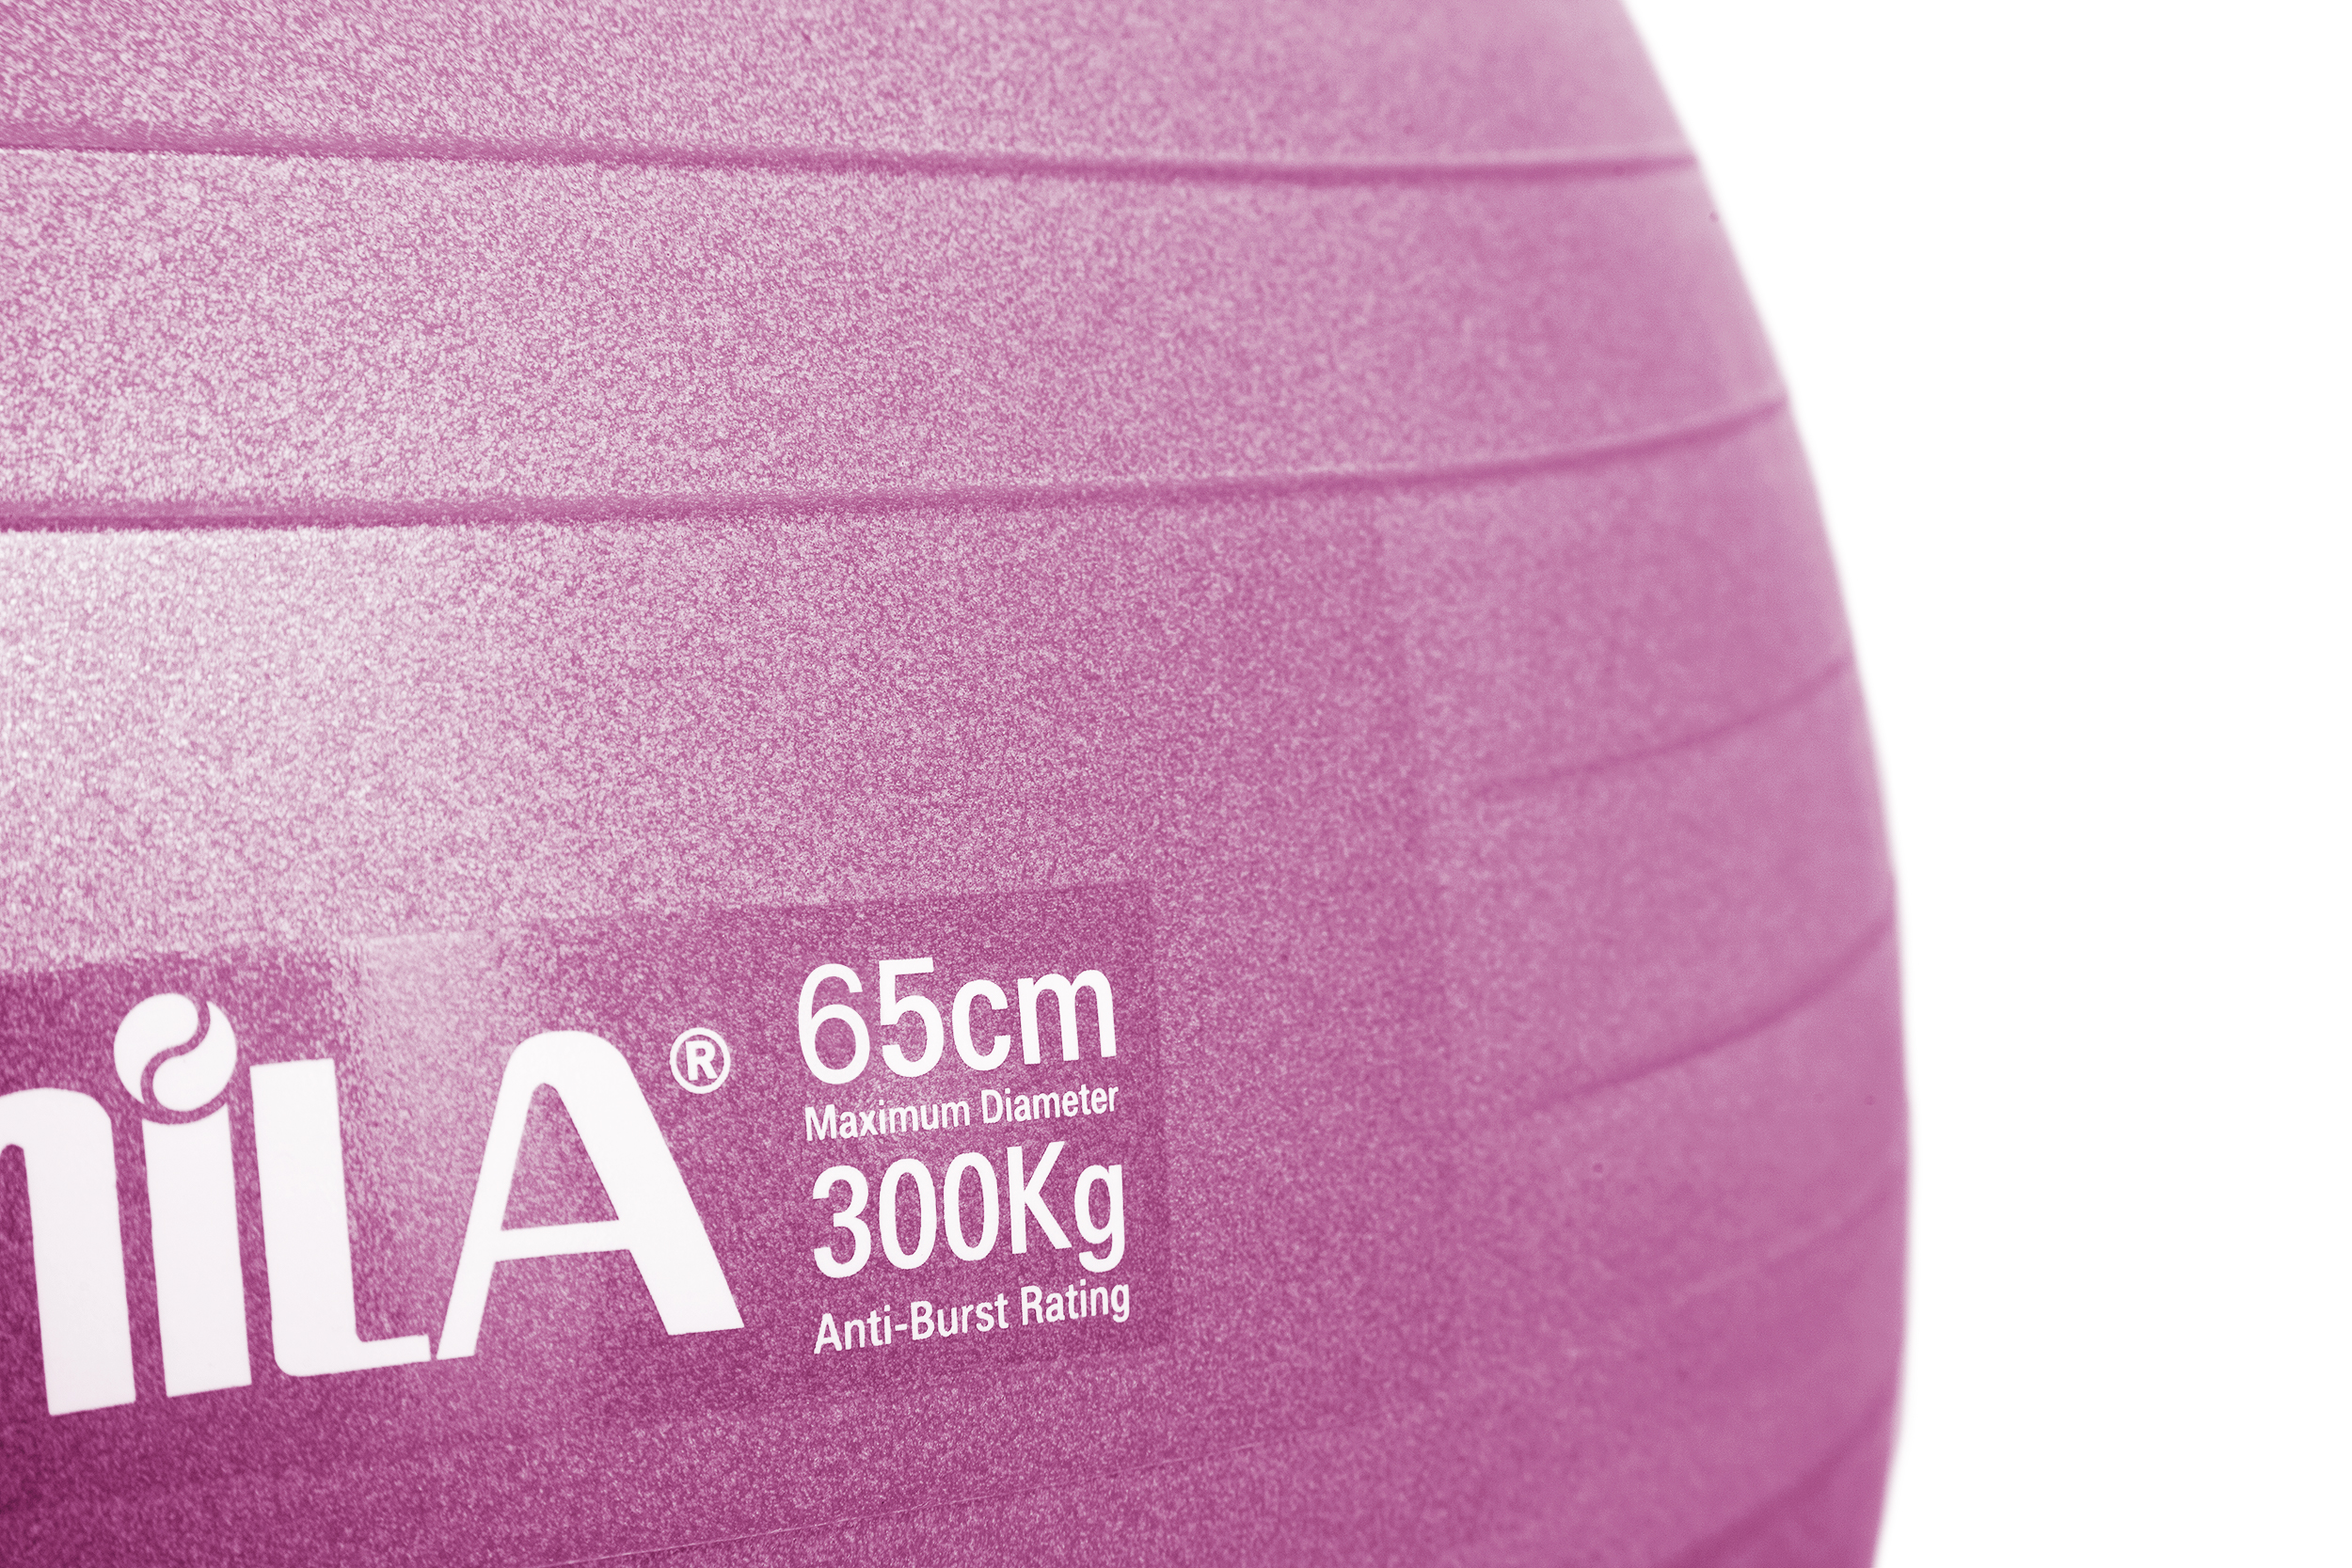 Μπάλα Γυμναστικής AMILA GYMBALL 65cm Ροζ Bulk